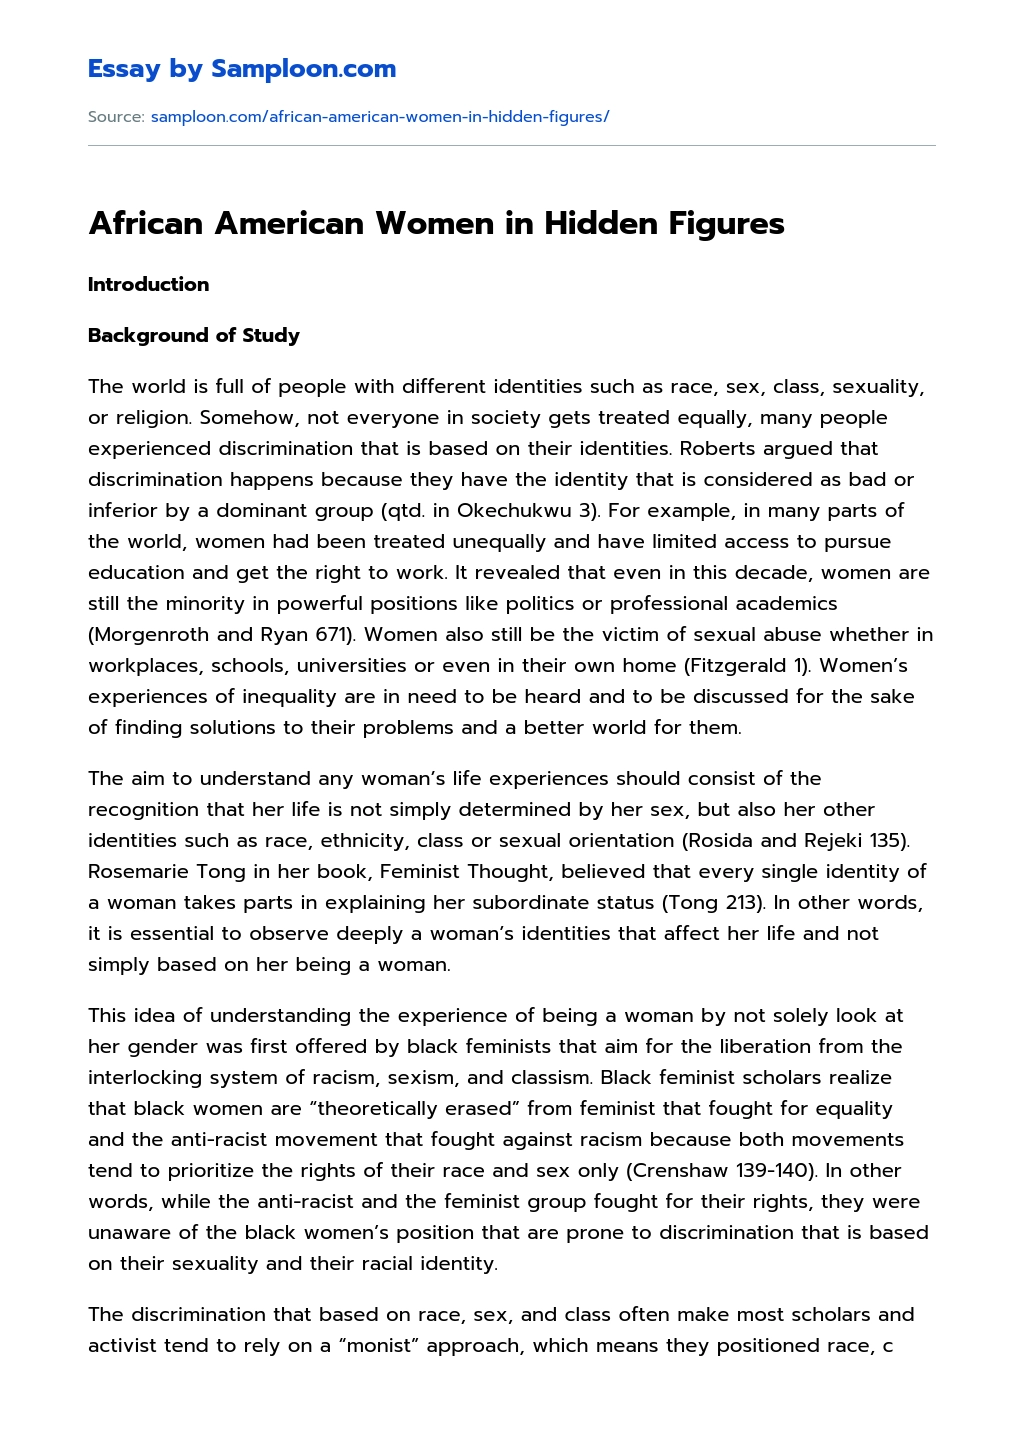 African American Women in Hidden Figures essay